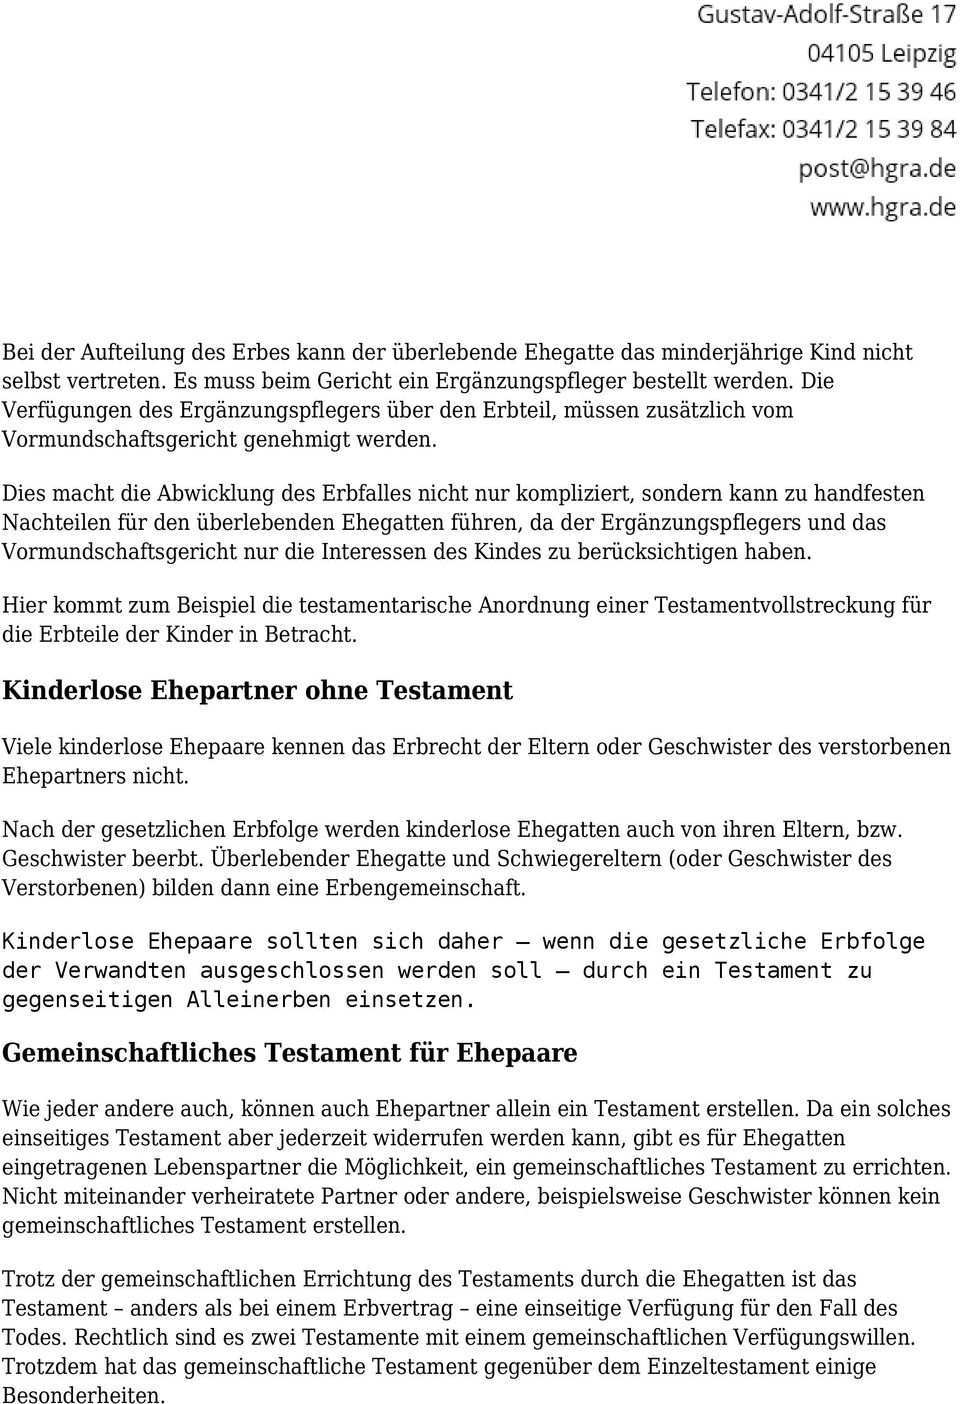 Das Gemeinschaftliche Ehegattentestament Und Das Berliner Testament Pdf Free Download